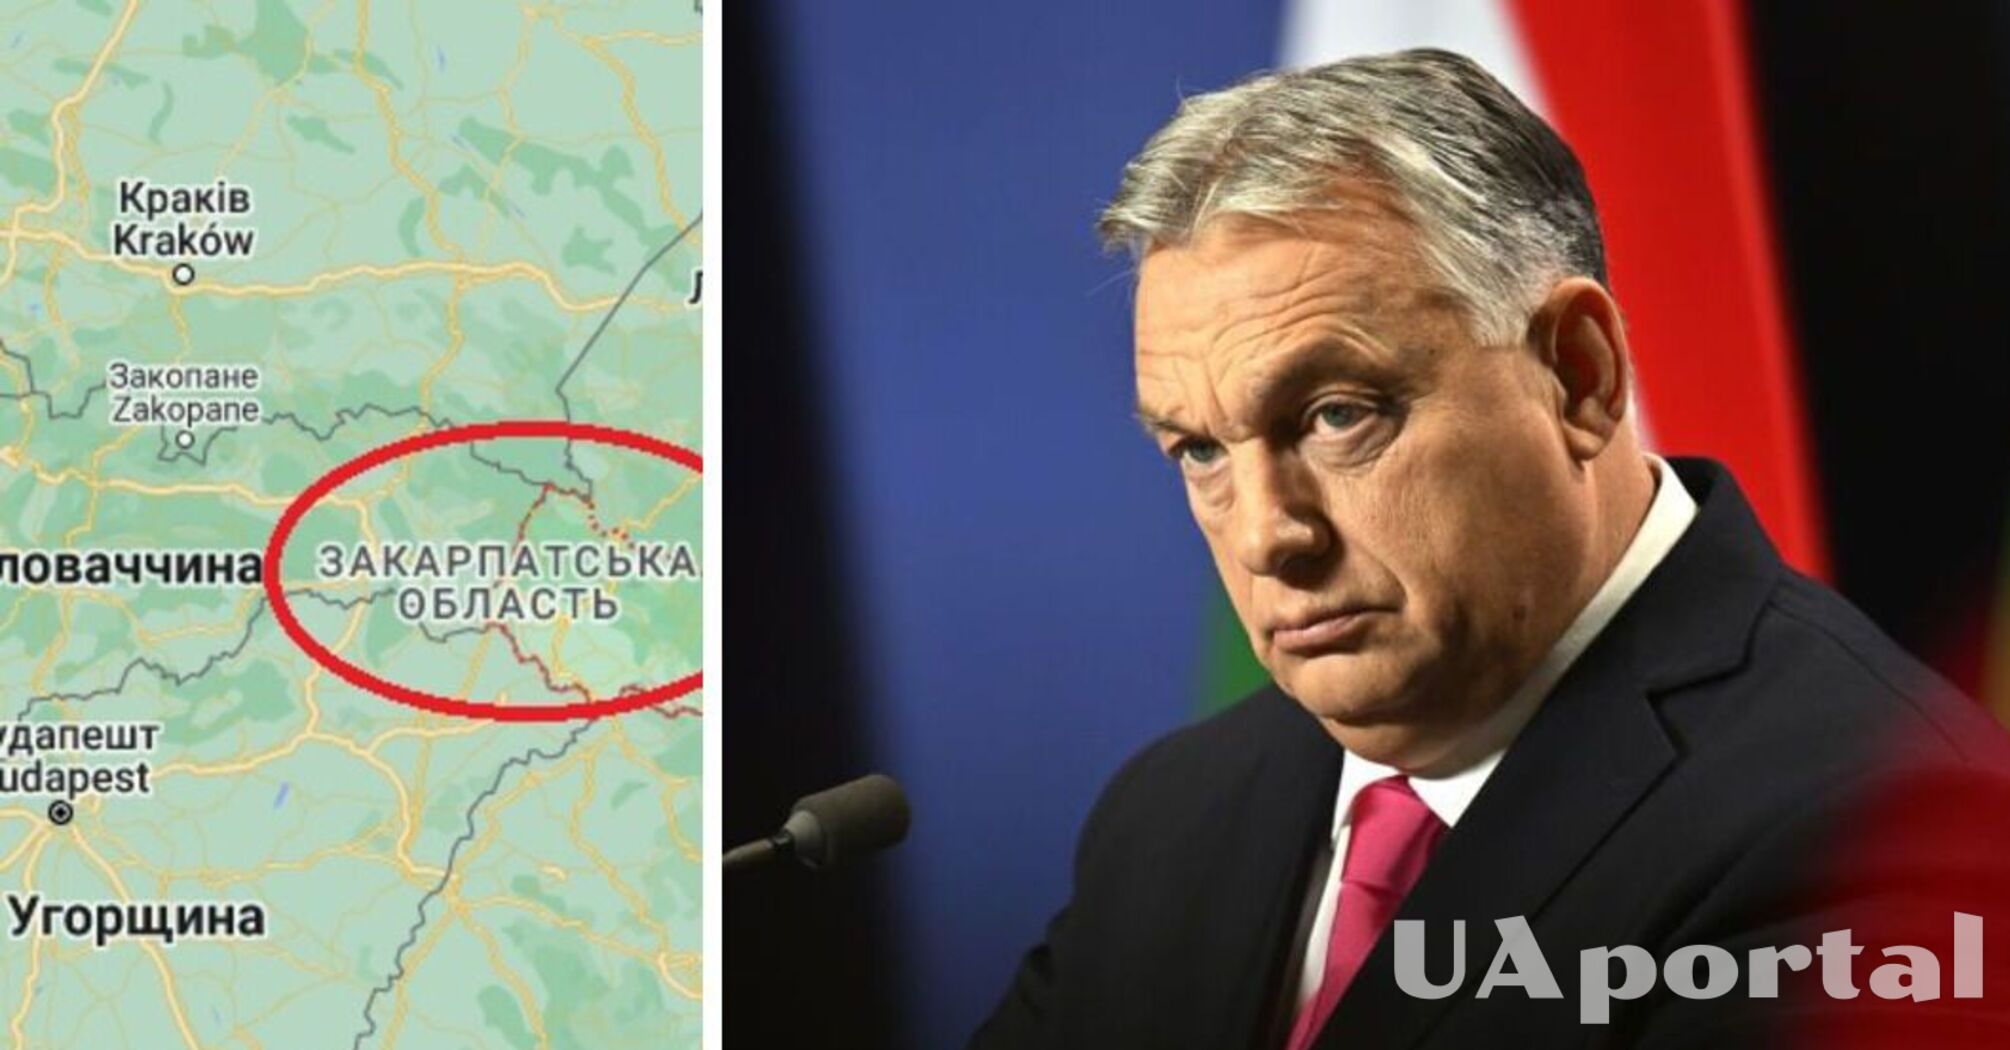 Посилається на перепис від 2001 року: Орбан вимагає визнання всього Закарпаття 'традиційно угорським' – ЗМІ